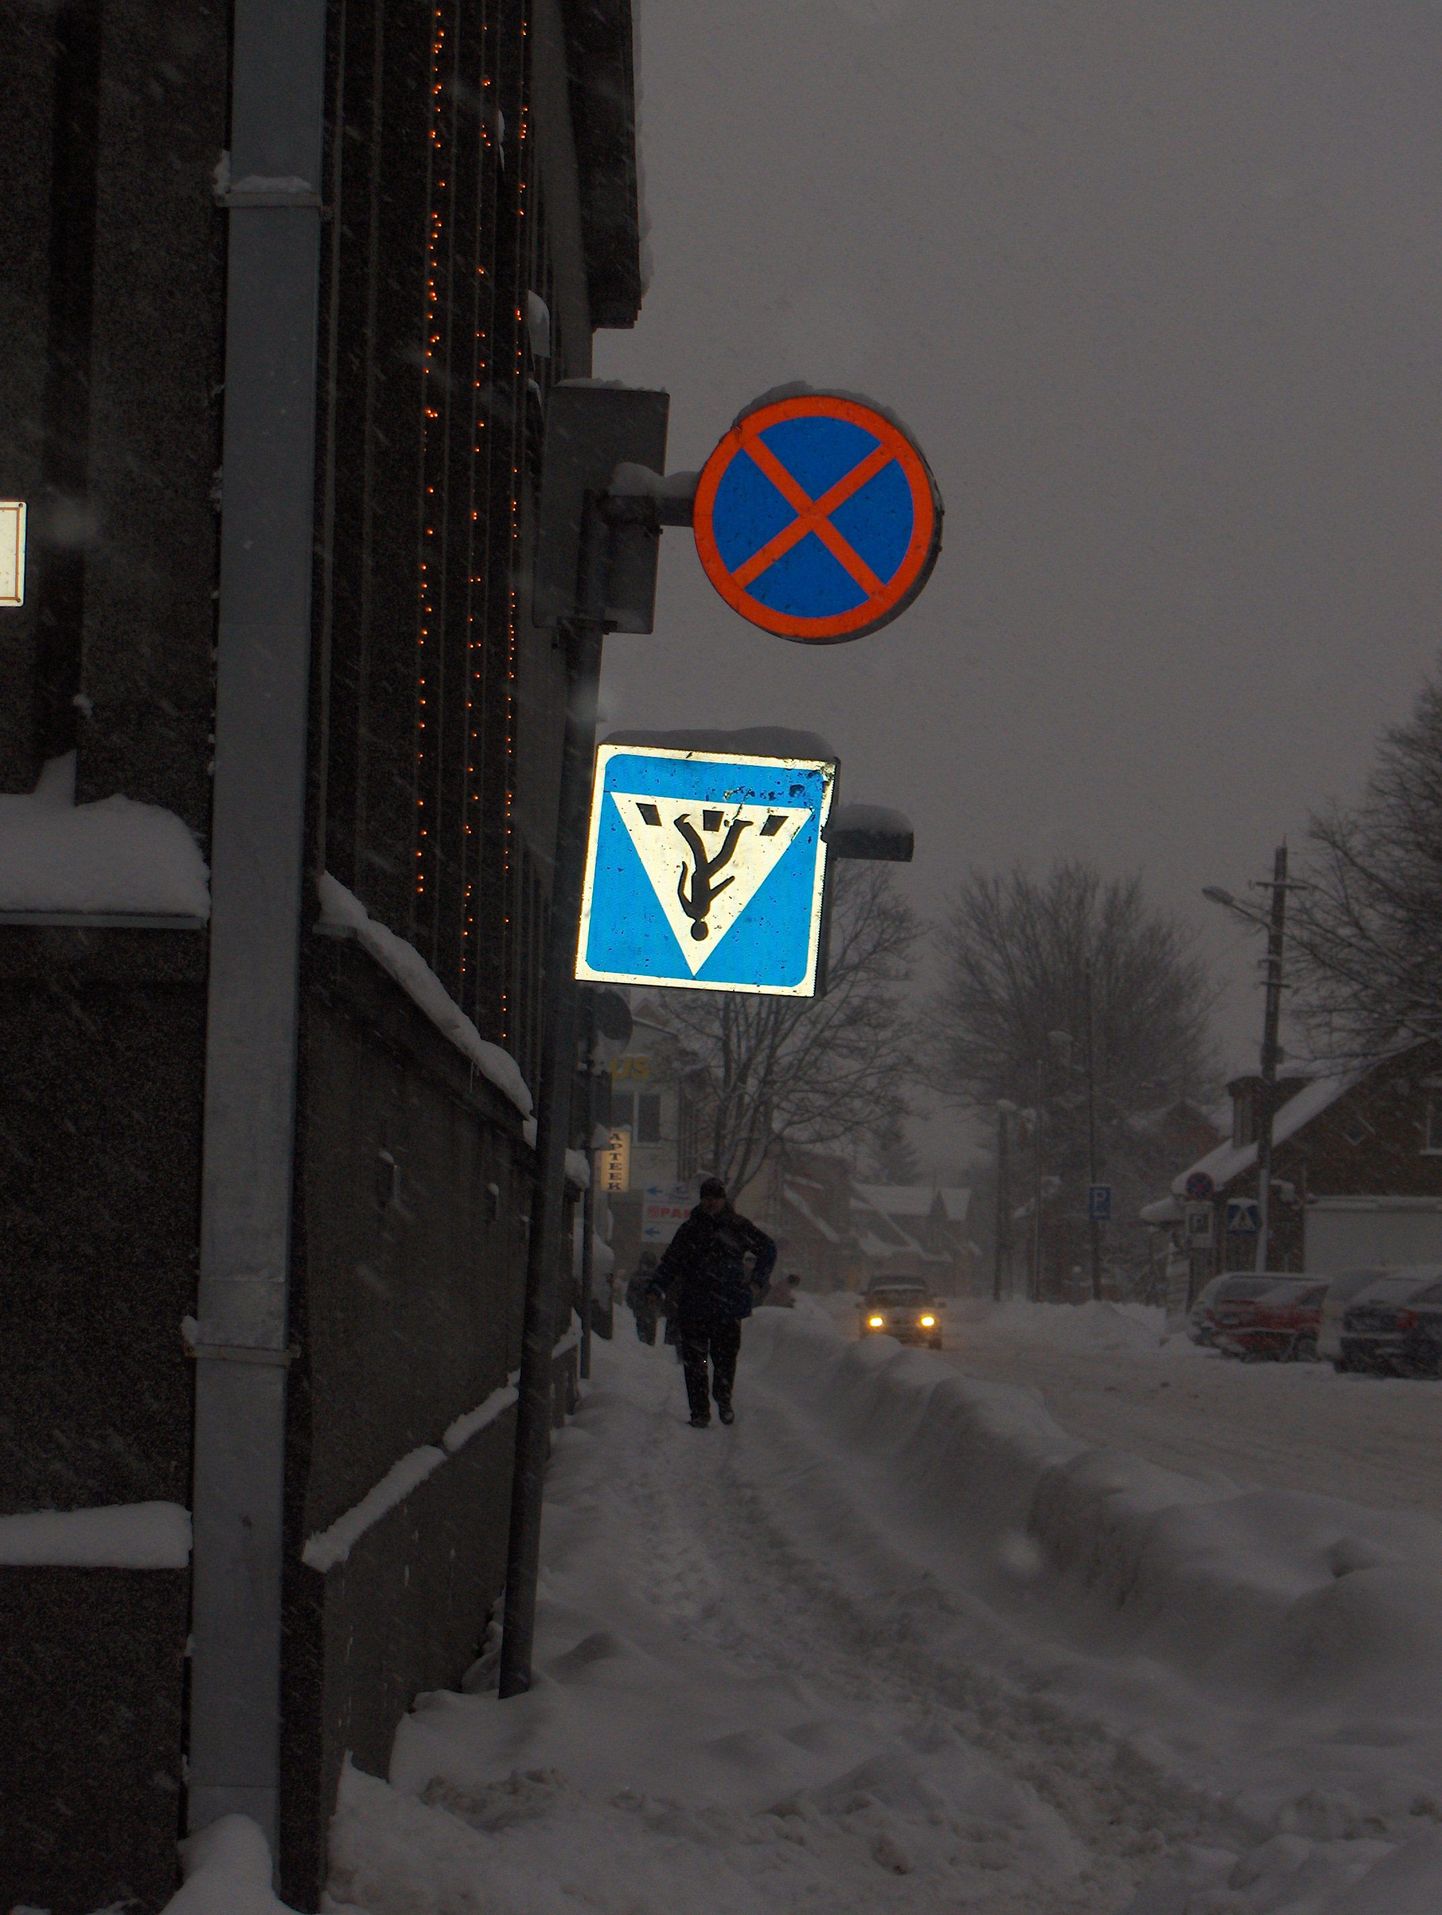 Tagurpidi liiklusmärk Pärnu linnavalitsuse hoone juures.